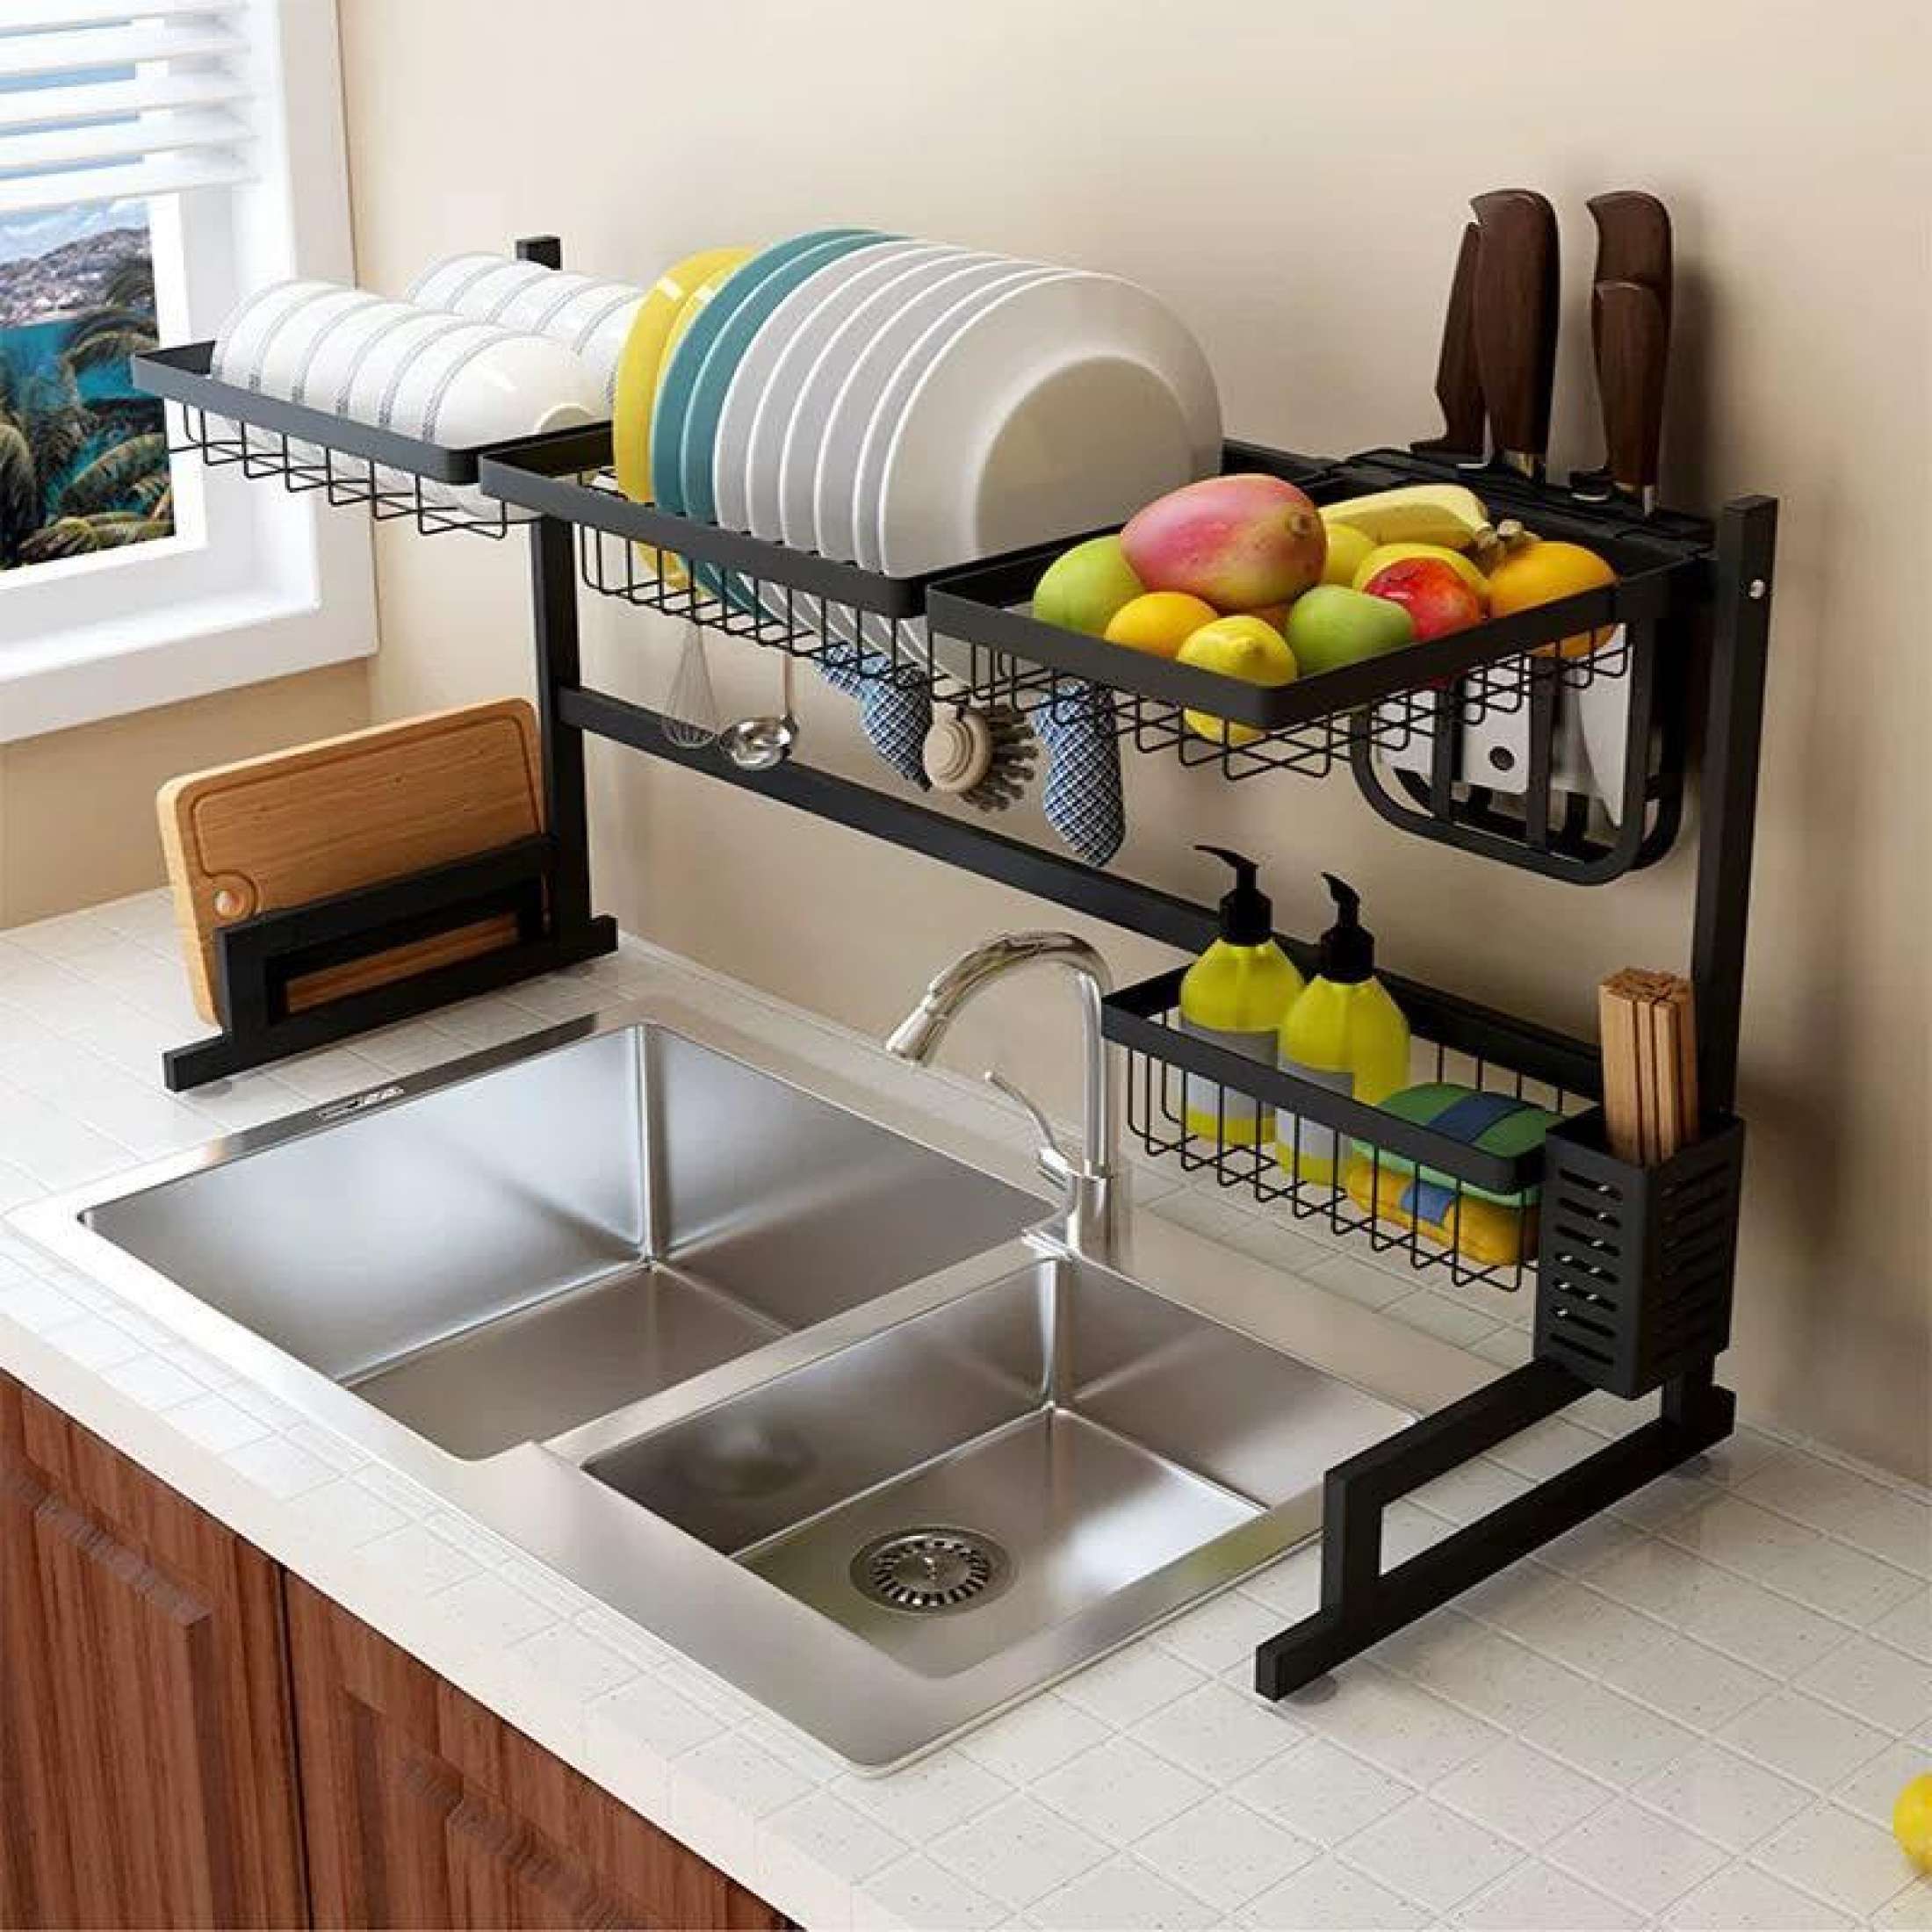 60-110cm Dish Drying Rack Over Sink,Drainer Shelf for Kitchen Supplies  Storage Counter Organizer Utensils